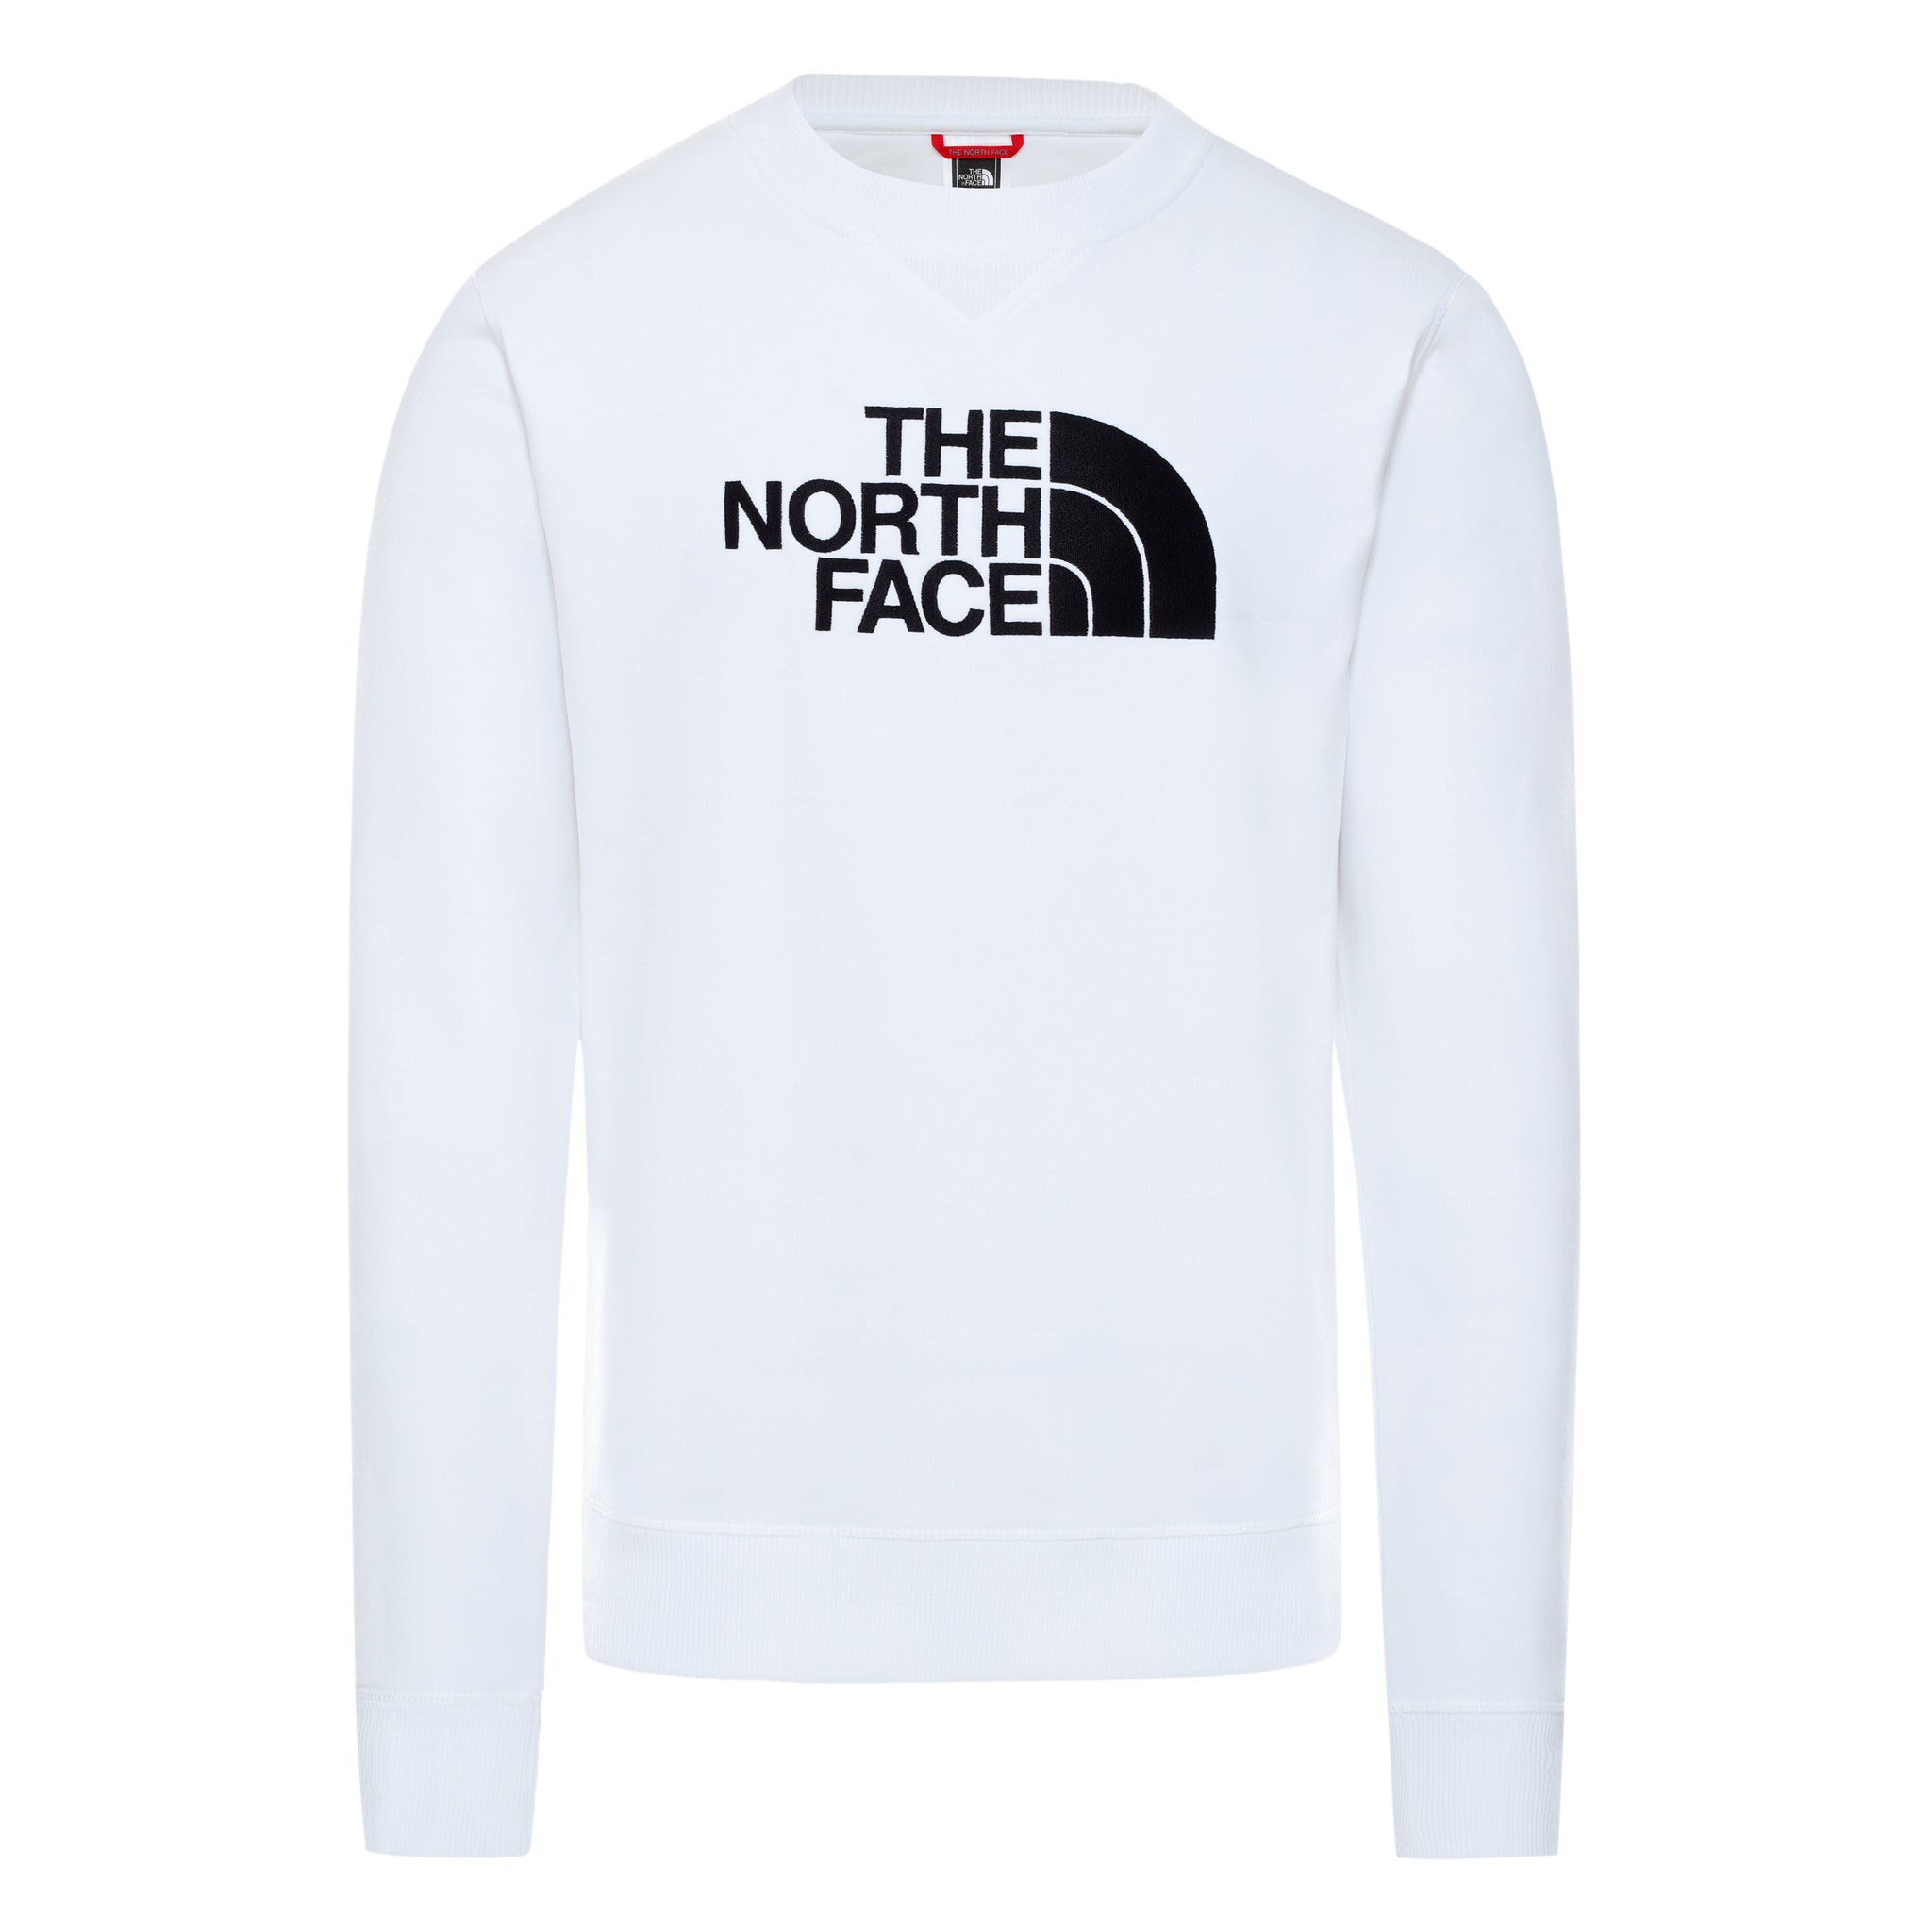 Felpa The North Face Girocollo / Bianco - Ideal Moda